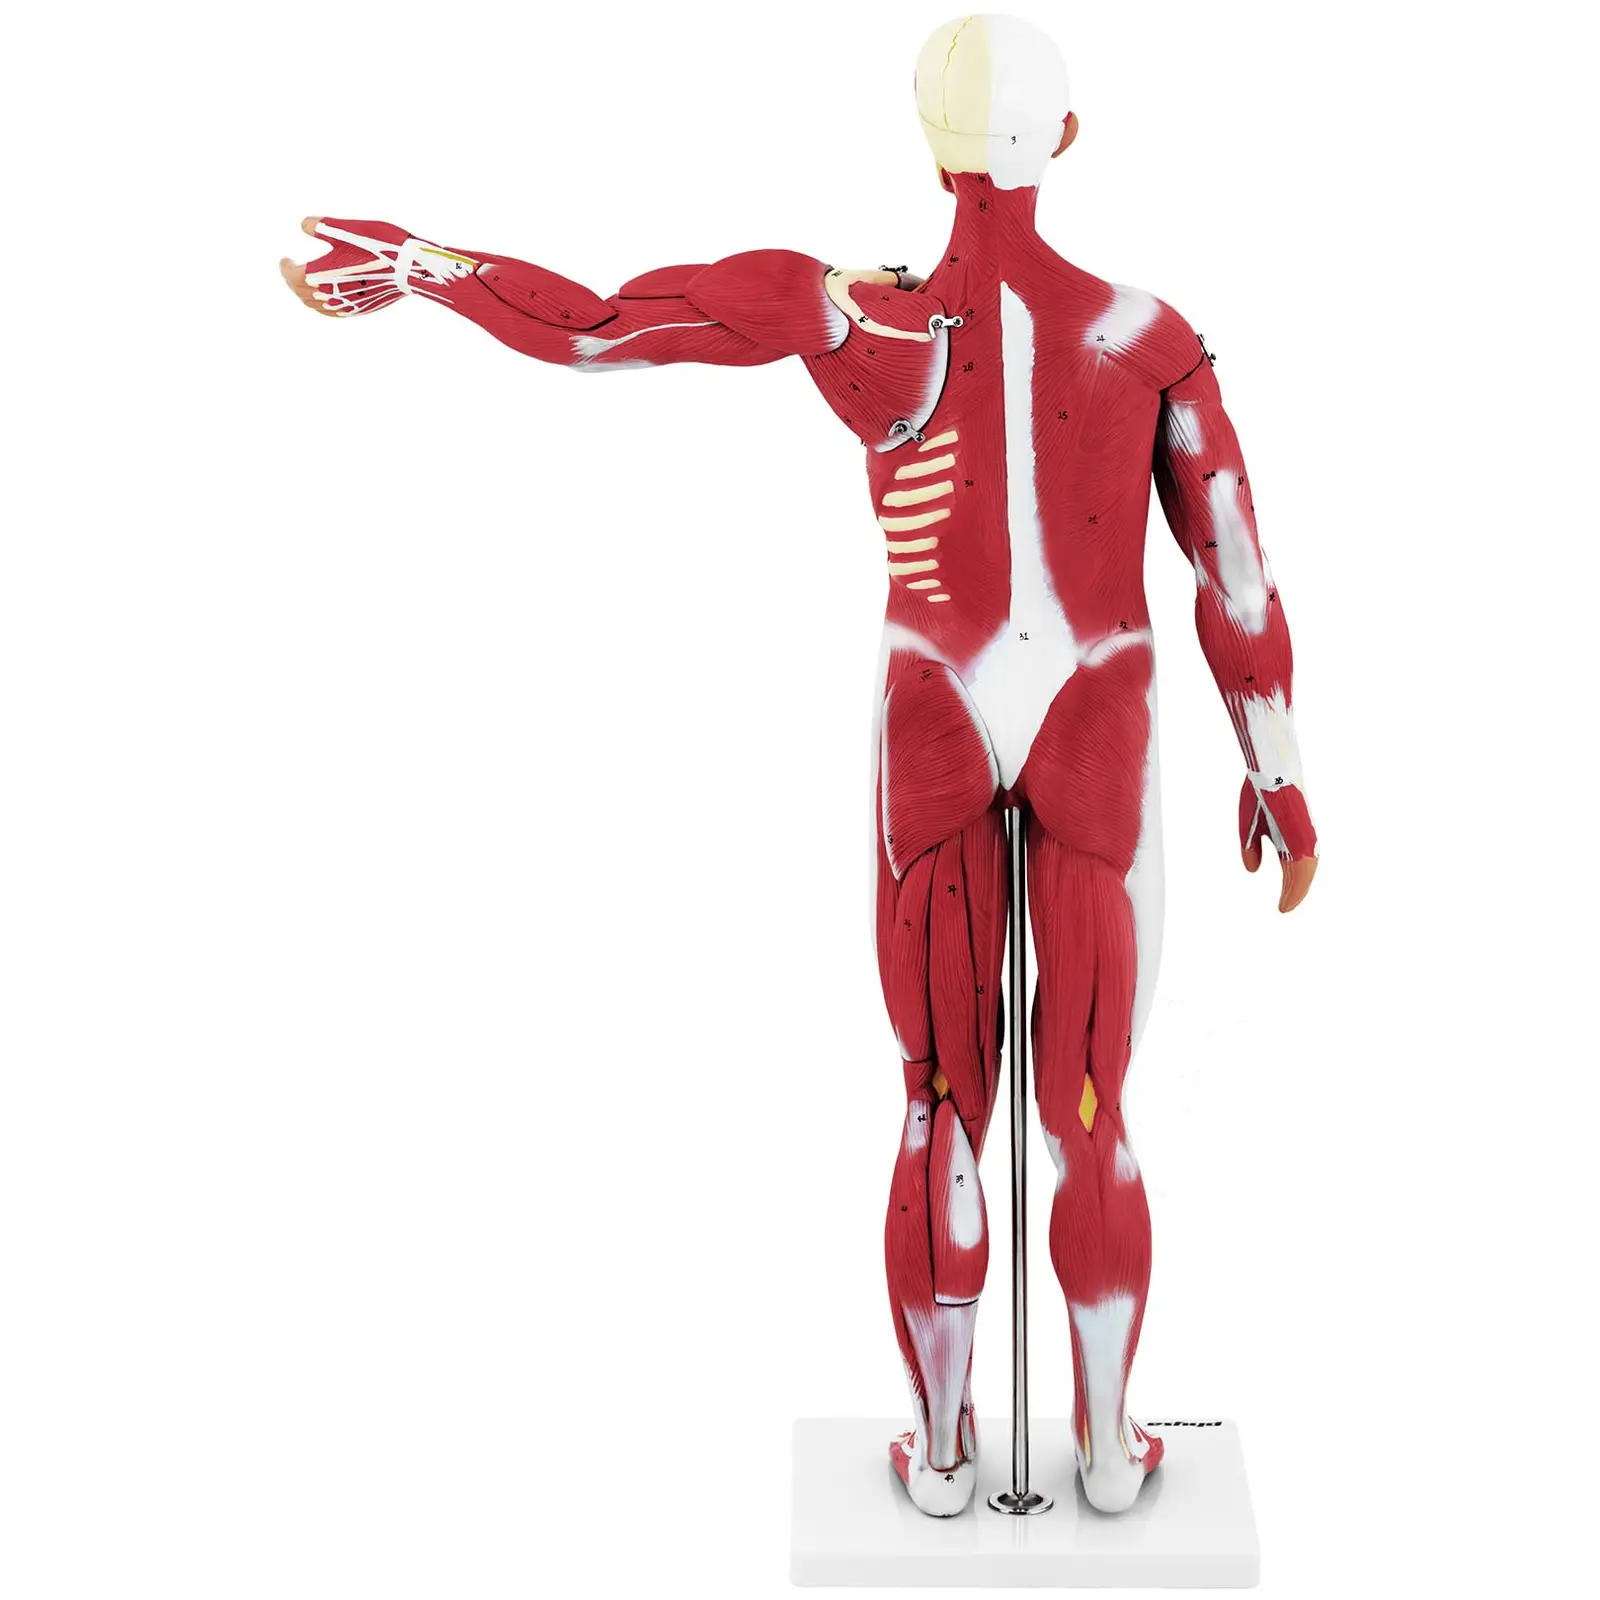 Modelo anatómico de musculatura - unisex - 27 piezas - 76 cm de altura